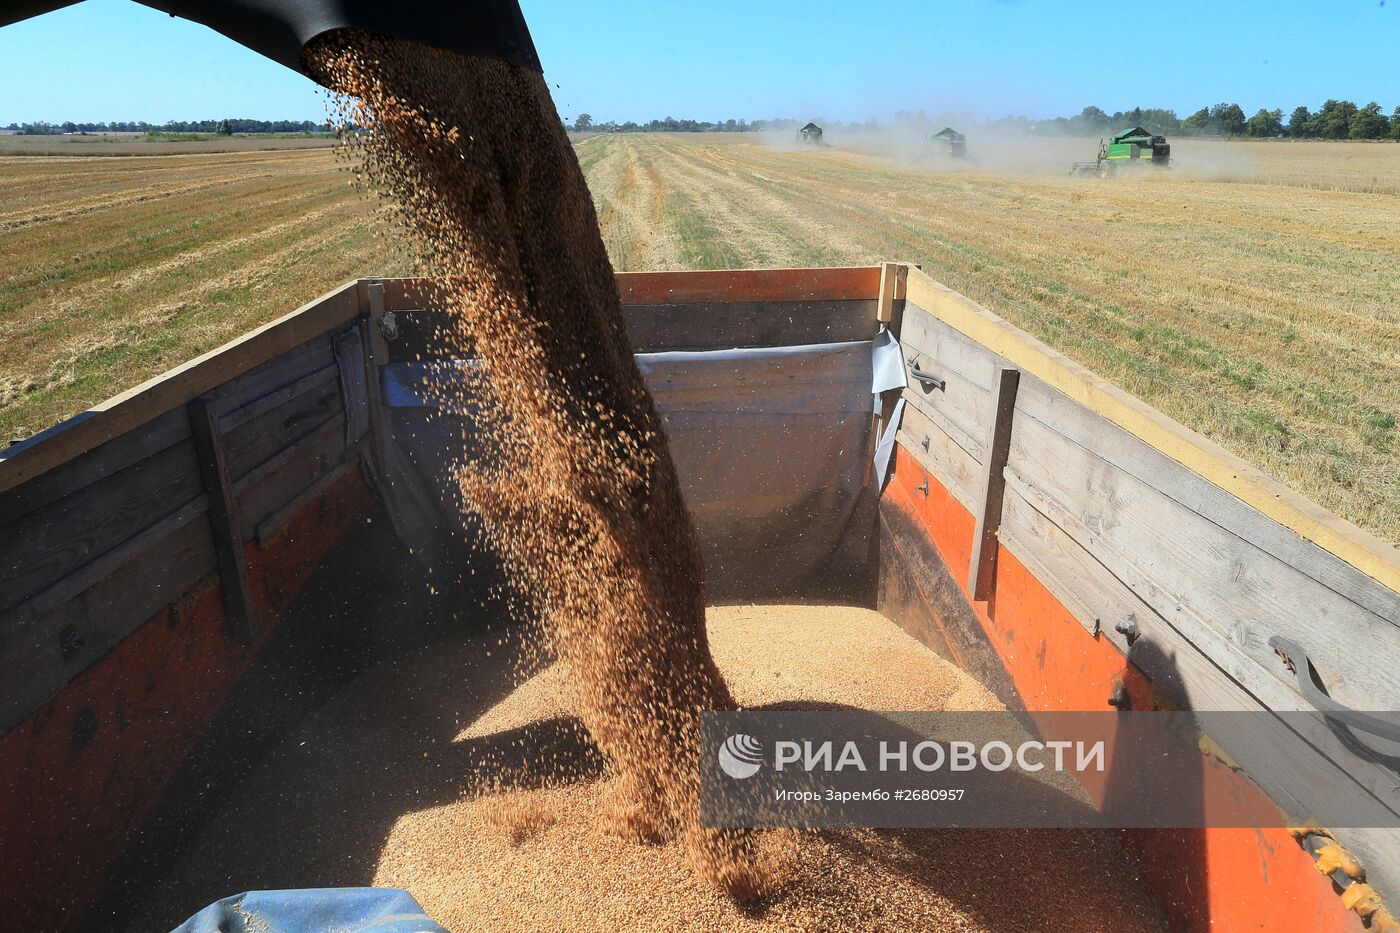 Уборка пшеницы в Калининградской области